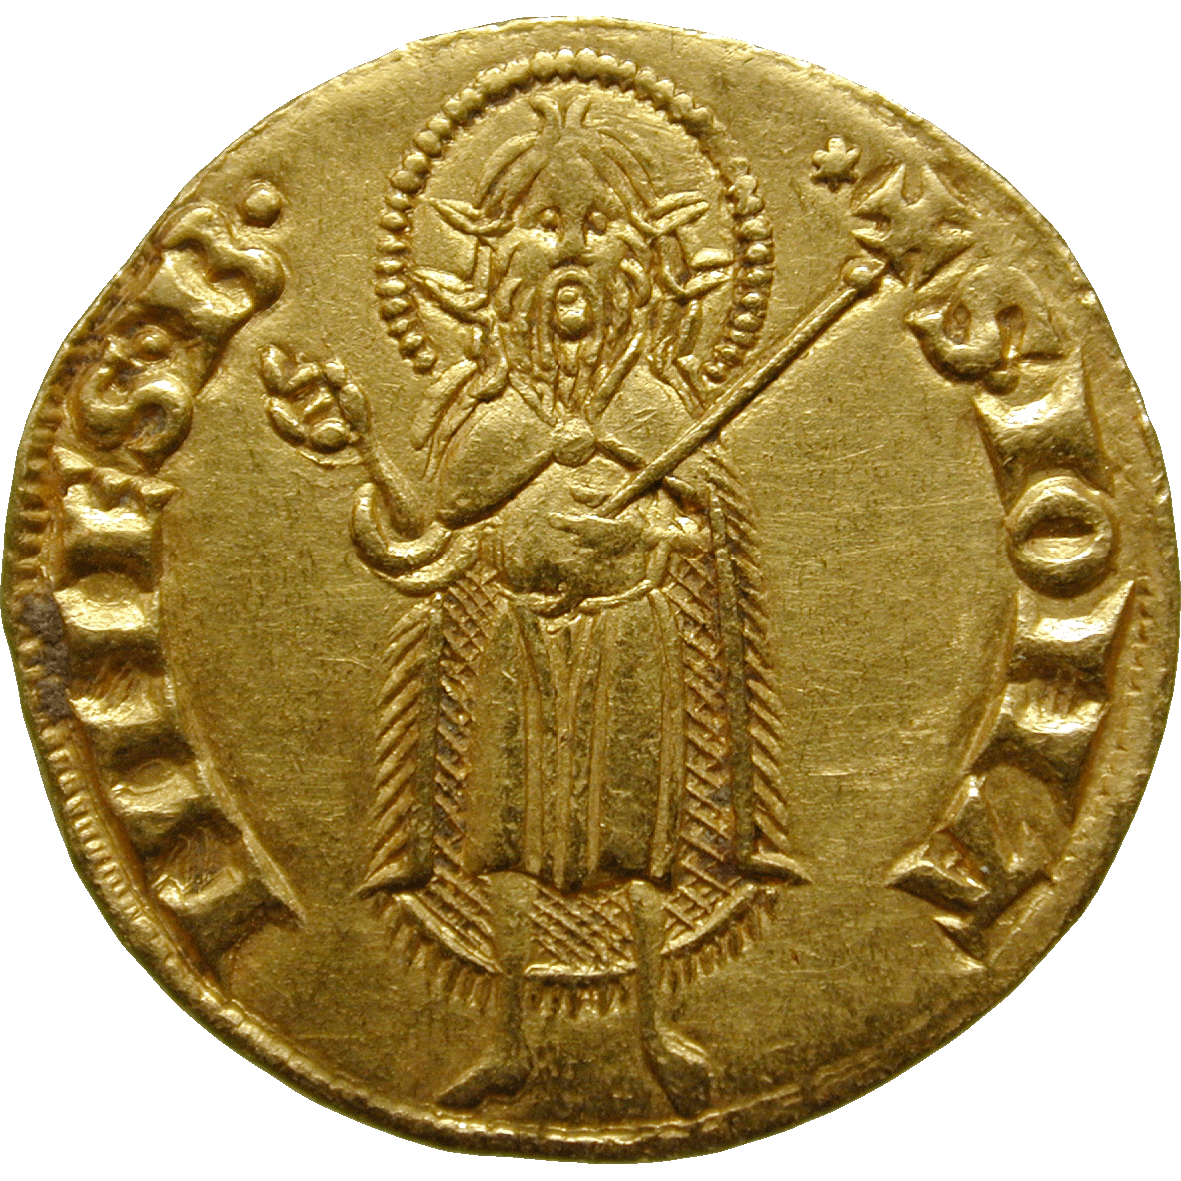 Heiliges Römisches Reich, Republik Florenz, Fiorino d'oro (reverse)